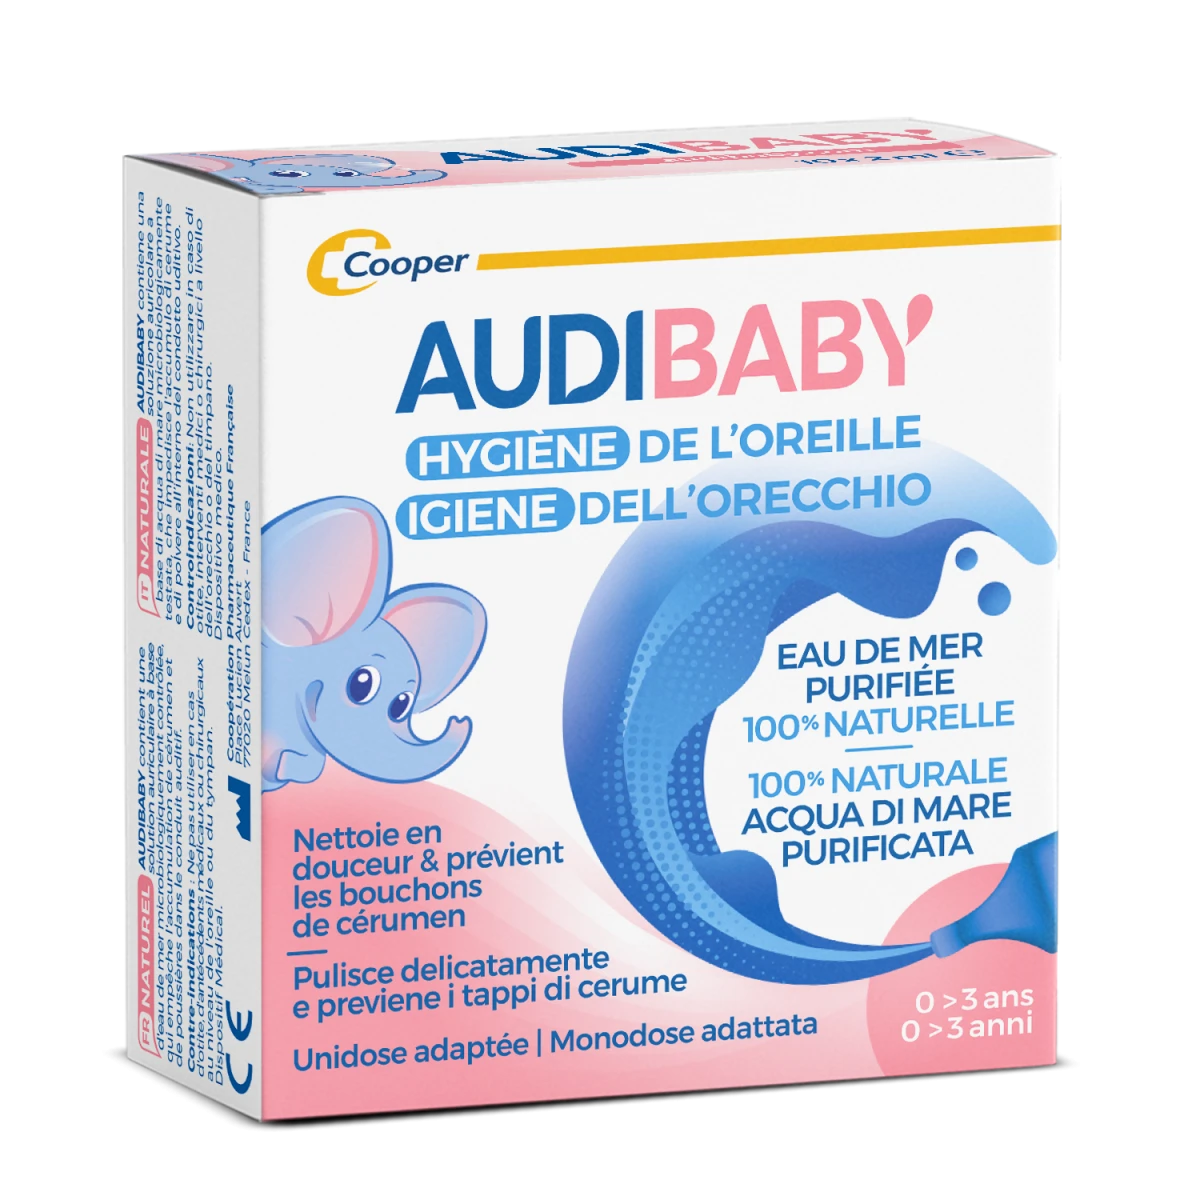 audispray Audibaby  pour l'hygiene de l'oreille de bébé